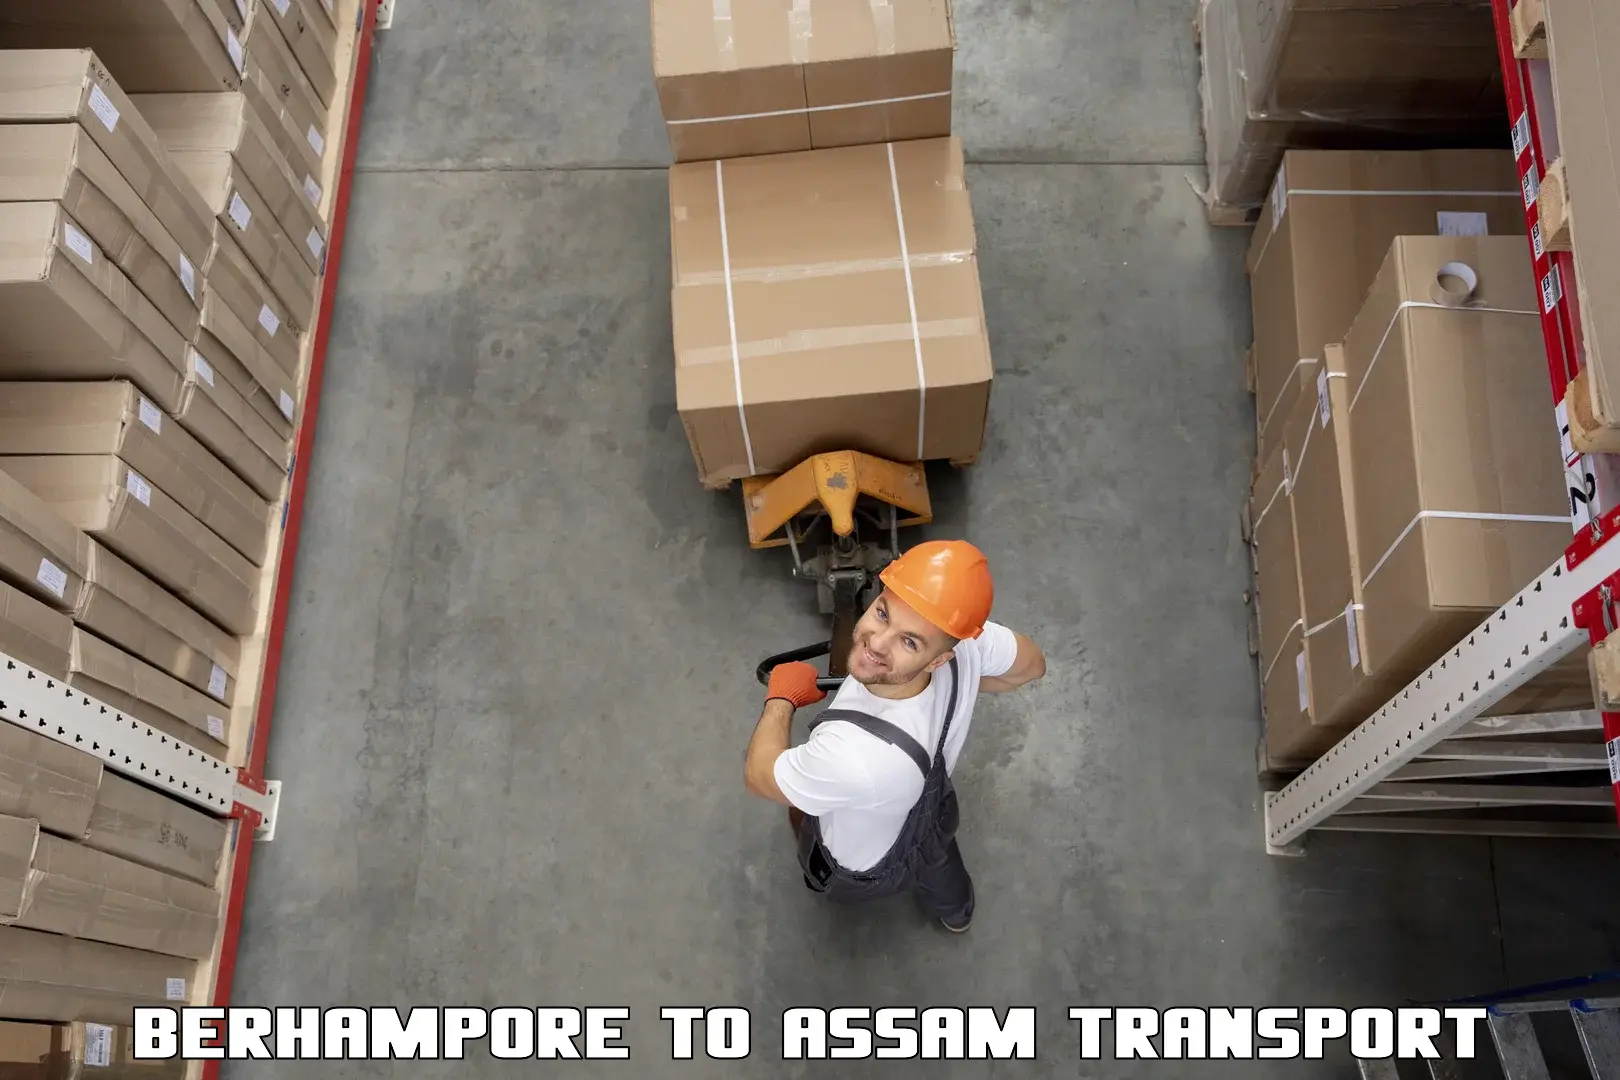 Cargo transport services Berhampore to Gossaigaon